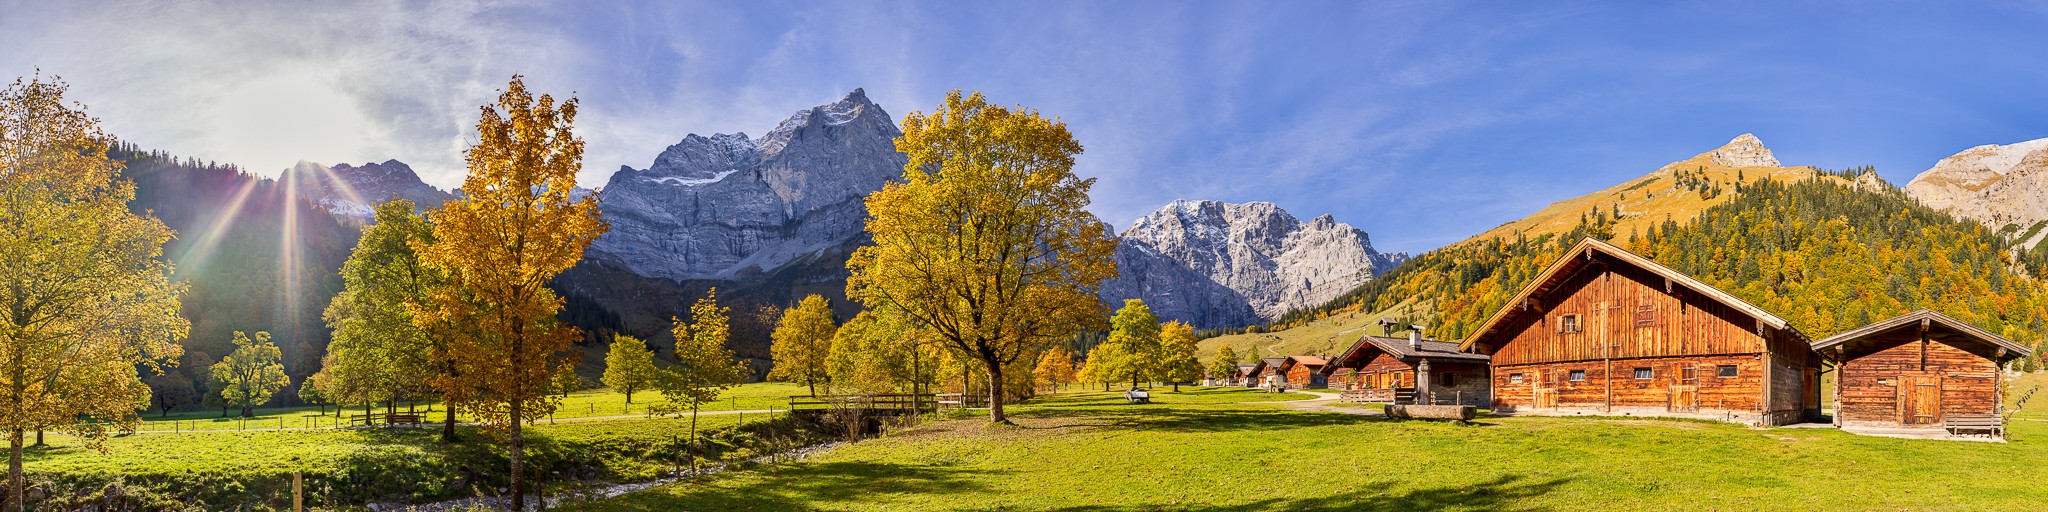 Engalm - Ausflug zur Engalm im Herbst. Idyllisches Almdorf in Tirol am Großen Ahornboden.